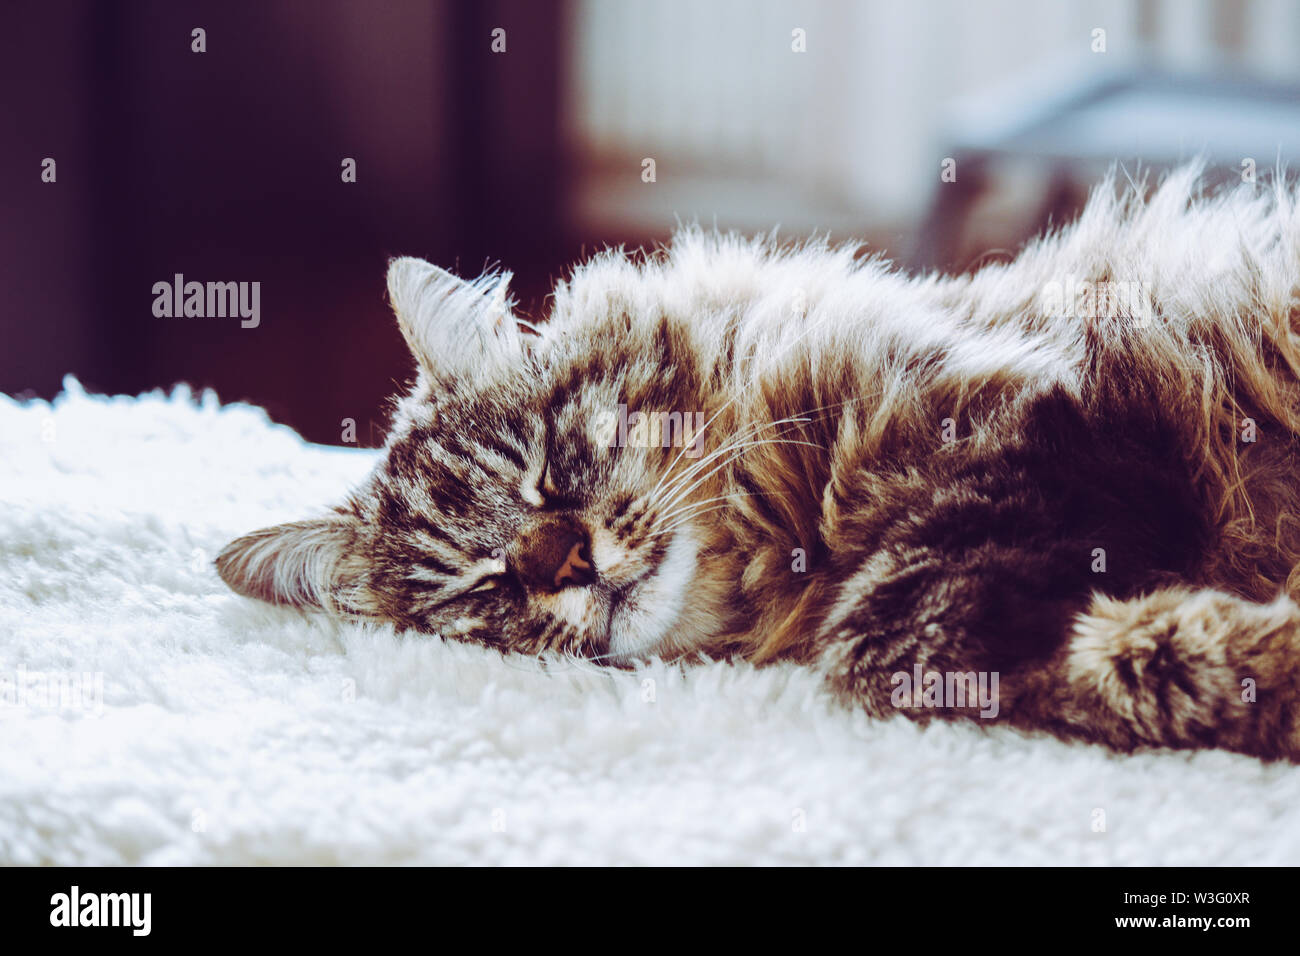 Adorable schlafende Katze. Grau kitty hält ein Nickerchen. Tier schlafen, Tier nap. Süße Tiere. Die Katze liegt auf weißen flauschigen Decke. Niedlichkeit, Unschuld Konzept. Stockfoto